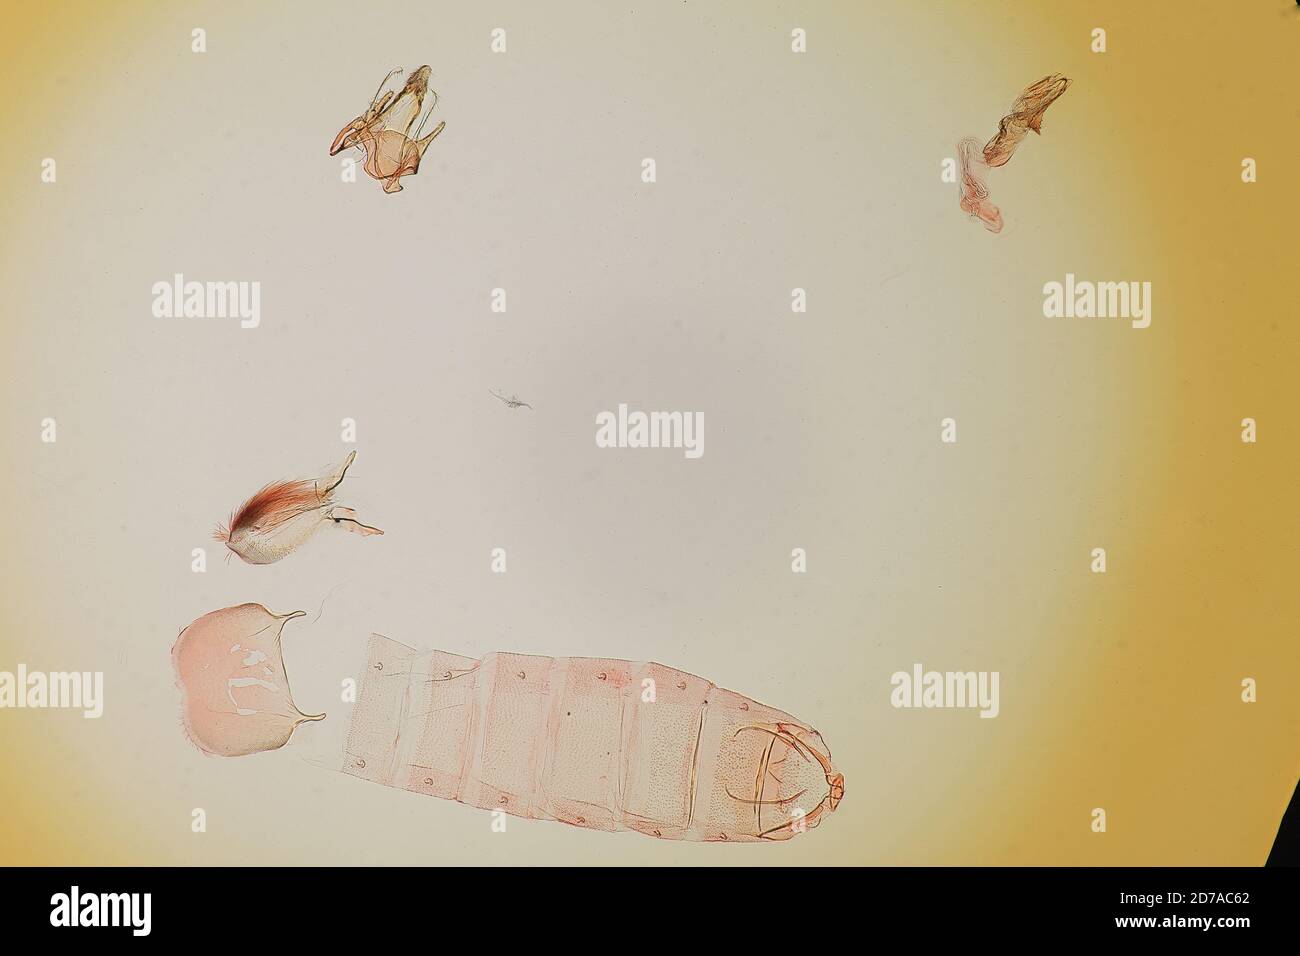 Pinned, Texas, United States, Gelechia biminimaculella Chambers, 1880, Animalia, Arthropoda, Insecta, Lepidoptera, Glossata, Gelechiidae, Gelechiinae Stock Photo